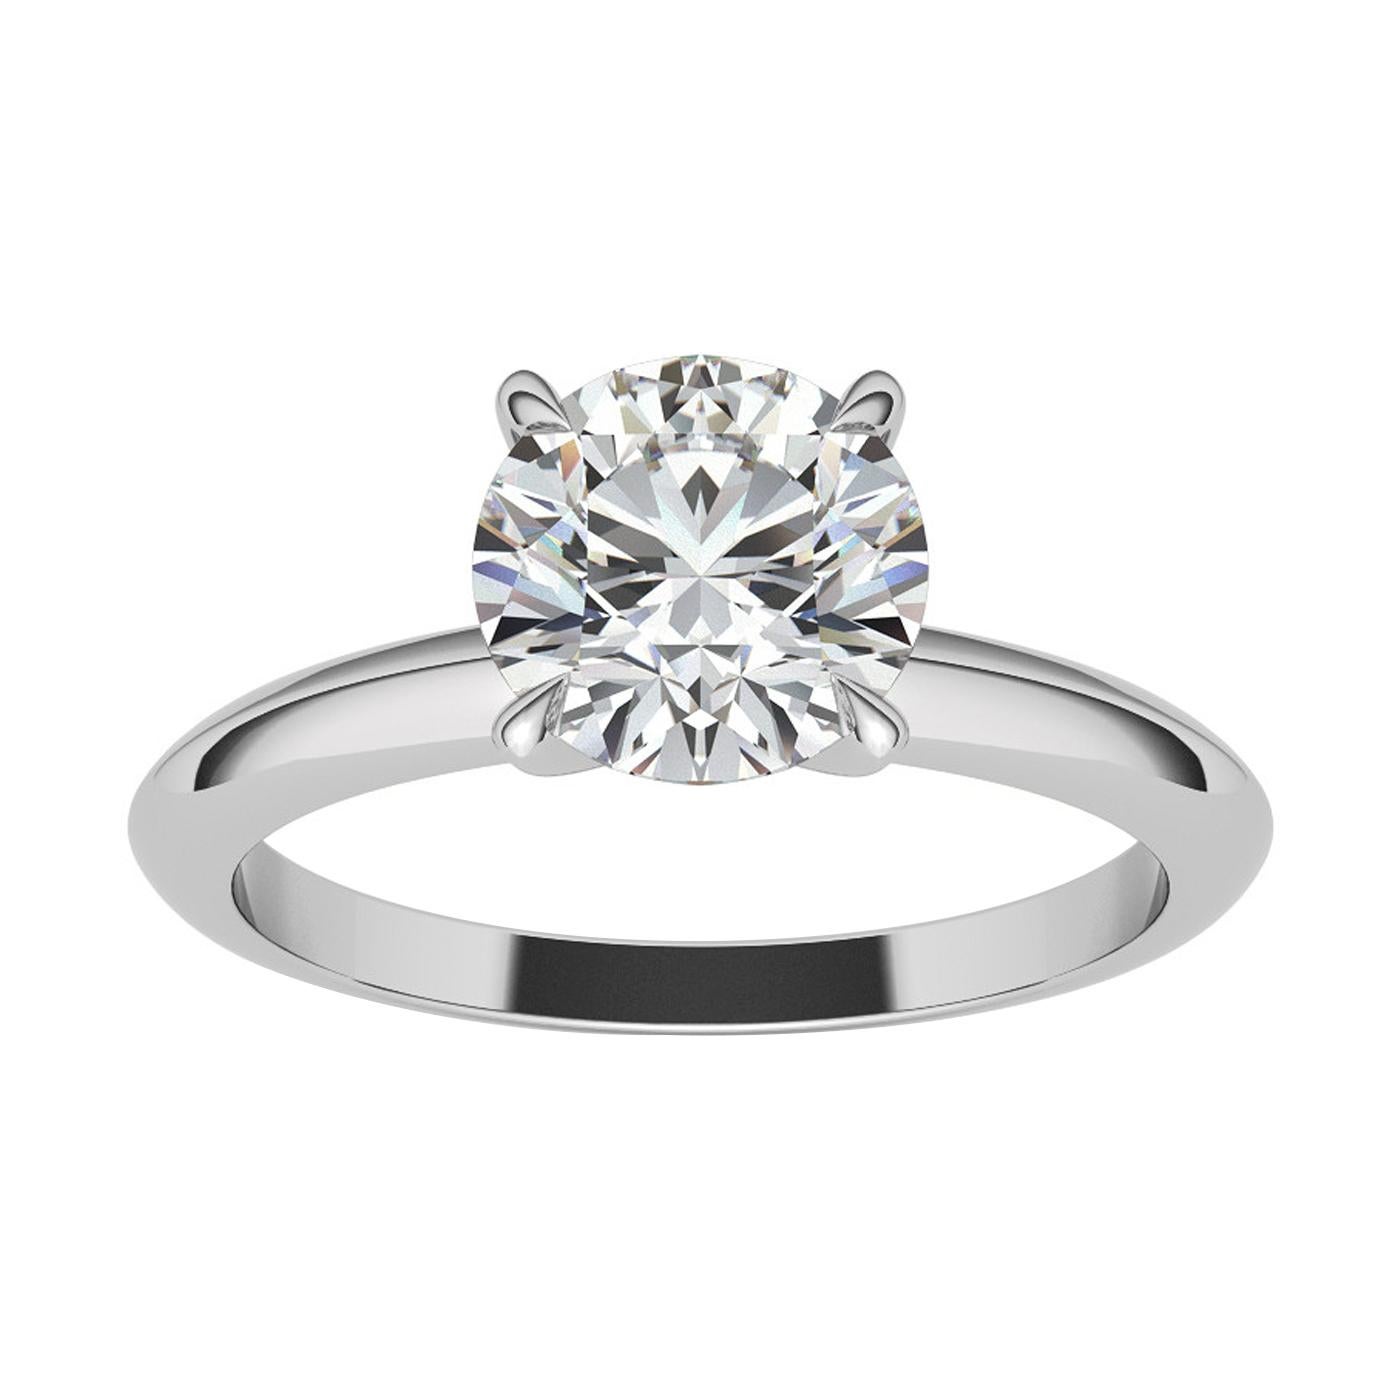 Dieser Verlobungsring im Tiffany-Stil enthält einen runden Diamanten im Brillantschliff, der in einen Vierzackenkopf gefasst ist. Dieser makellos gearbeitete Diamantring ist ein zeitloses Symbol dauerhafter Schönheit, das über Generationen hinweg